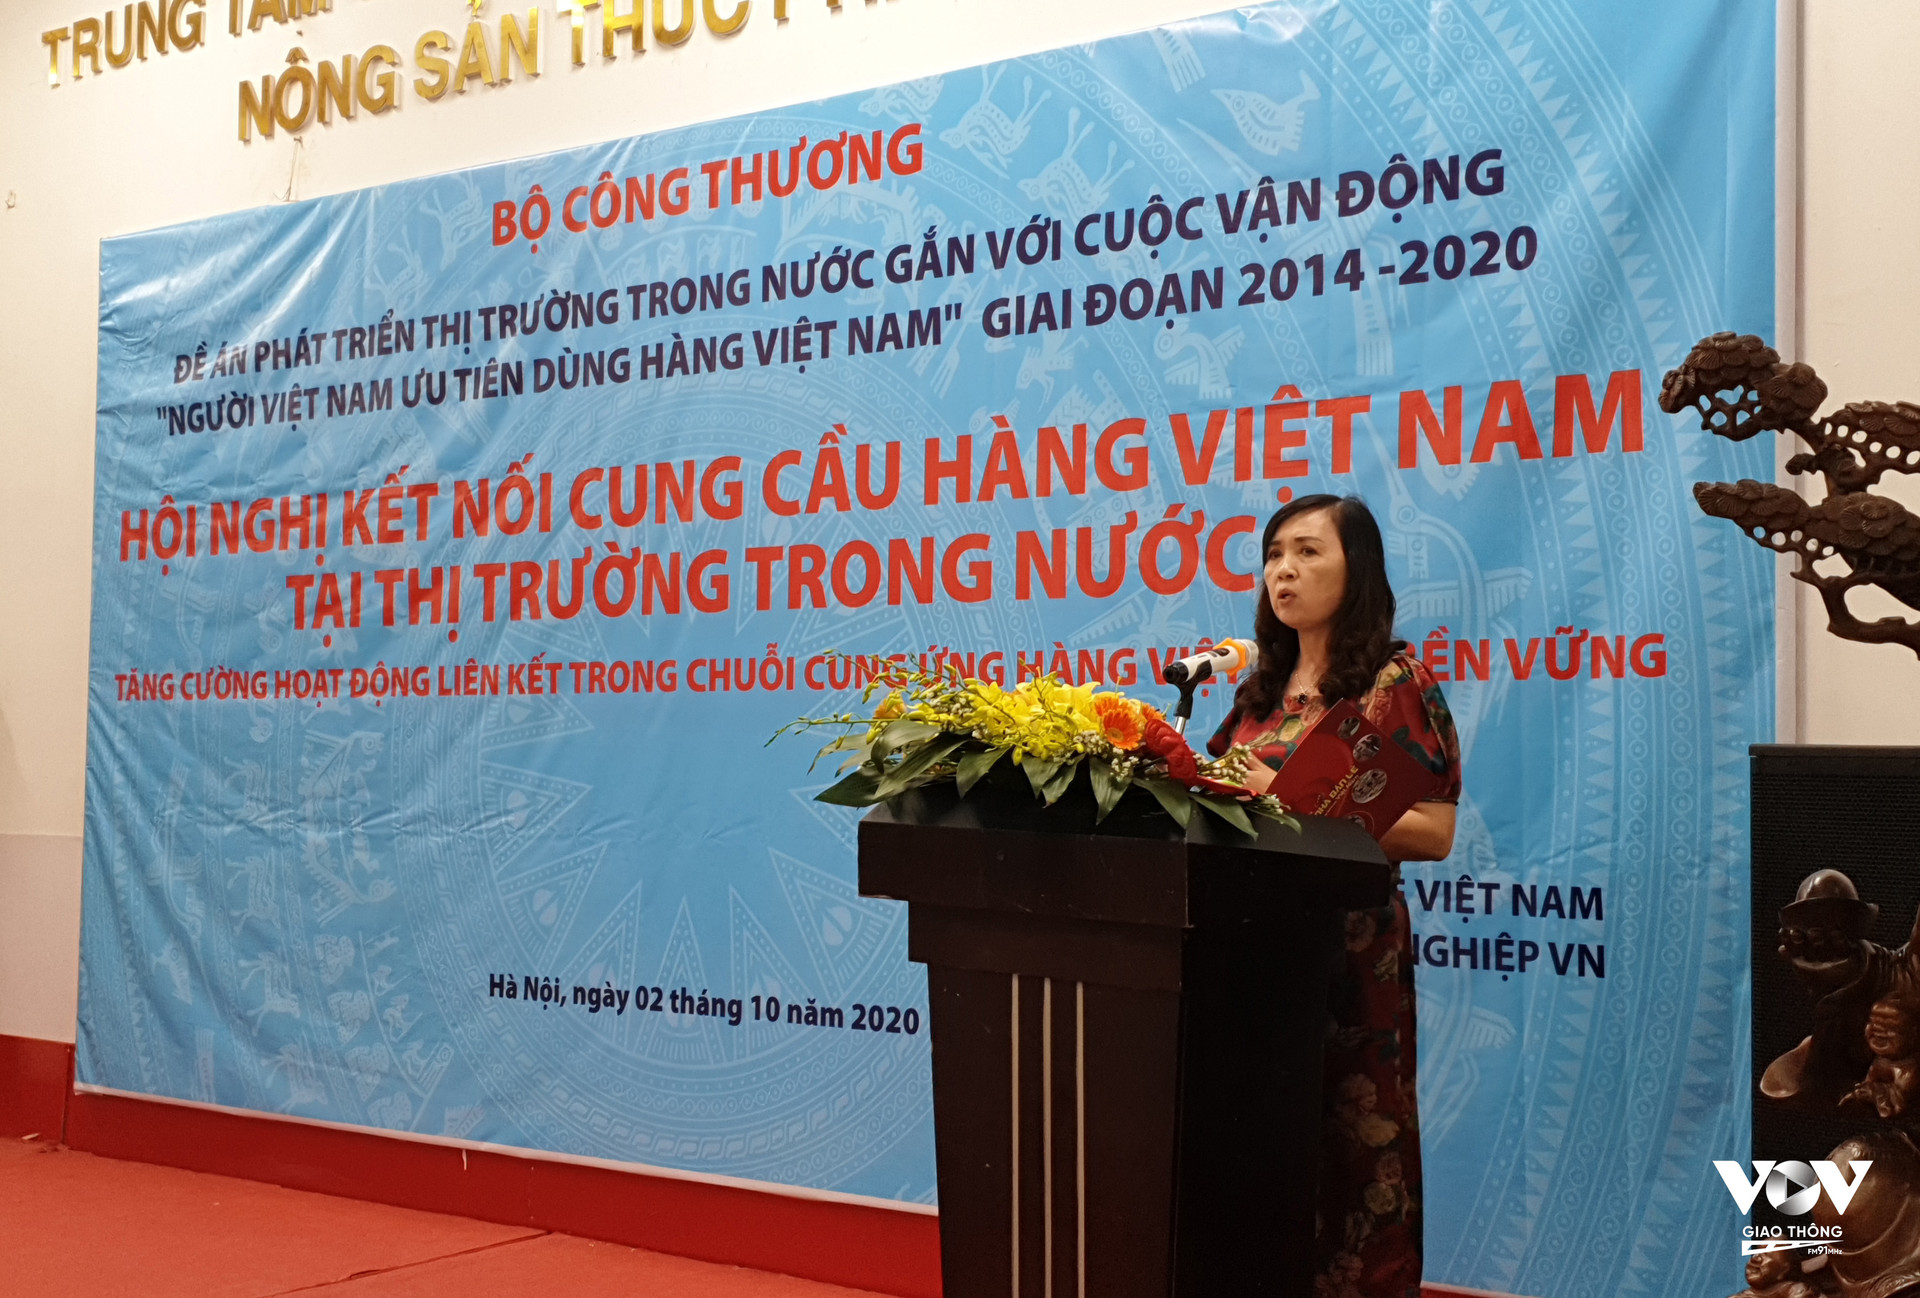 Bà Vũ Thị Hậu, Chủ tịch Hiệp hội các nhà bán lẻ Việt Nam